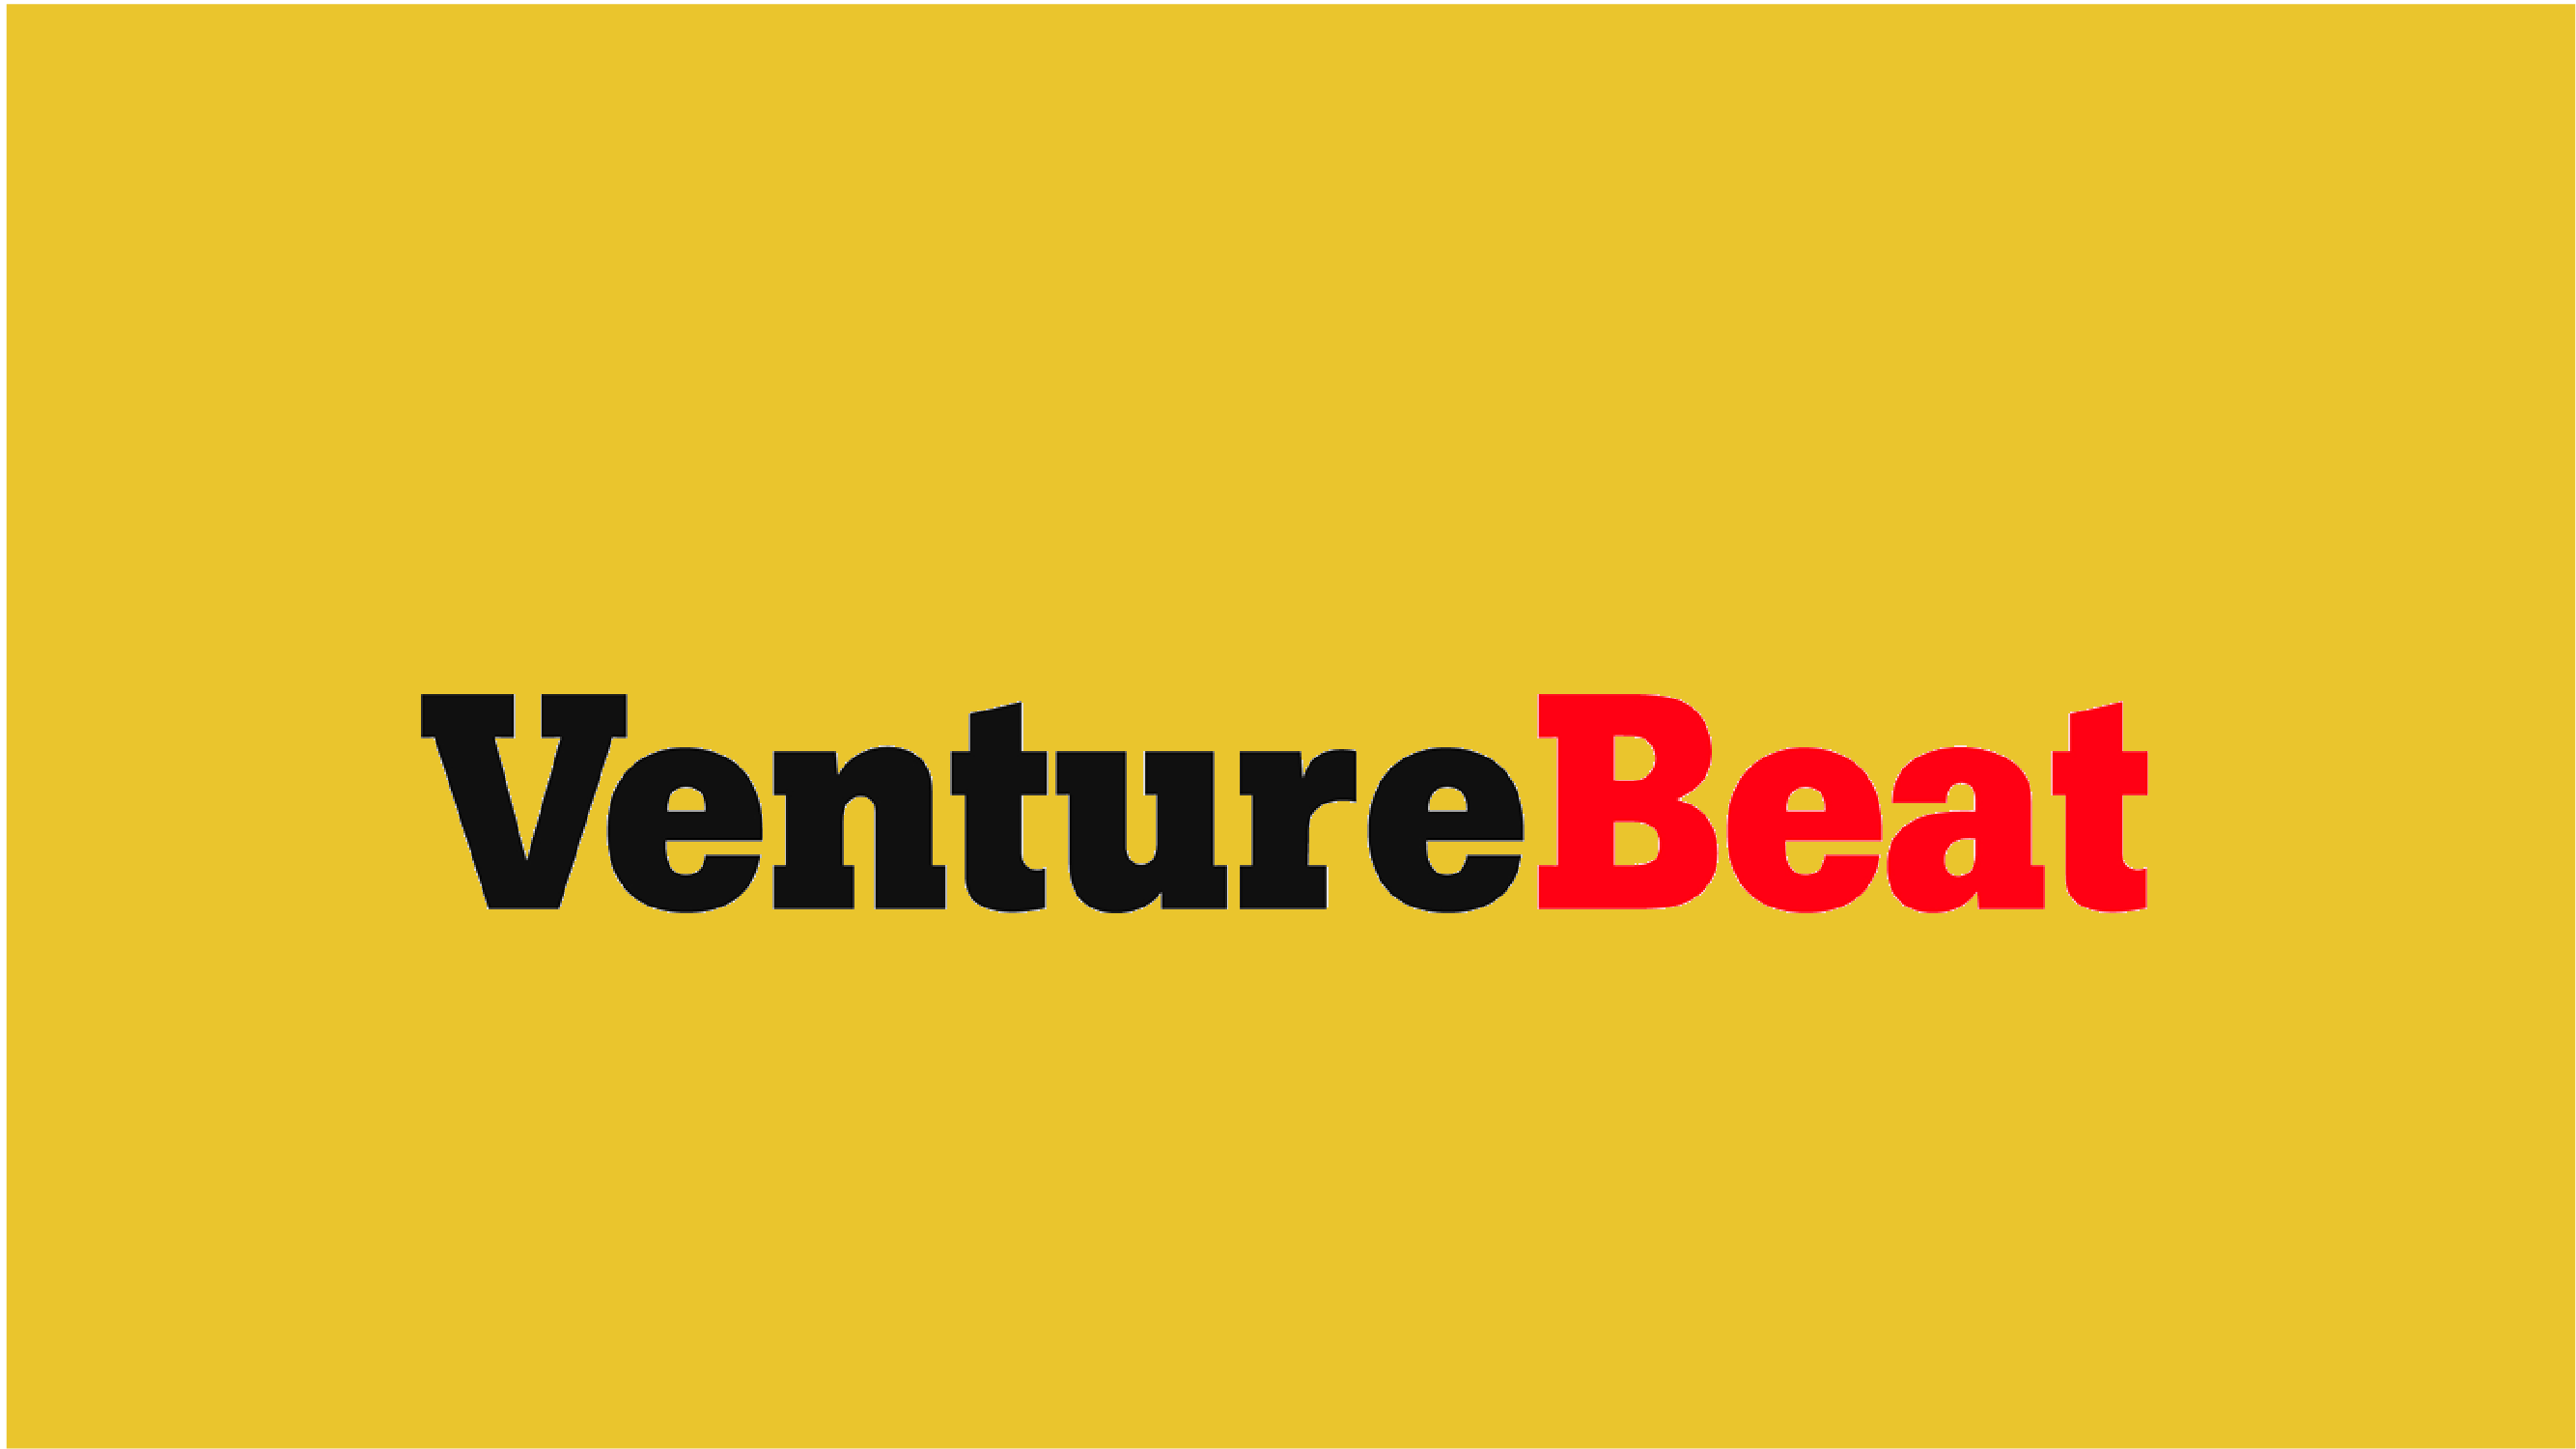 Venture Beat